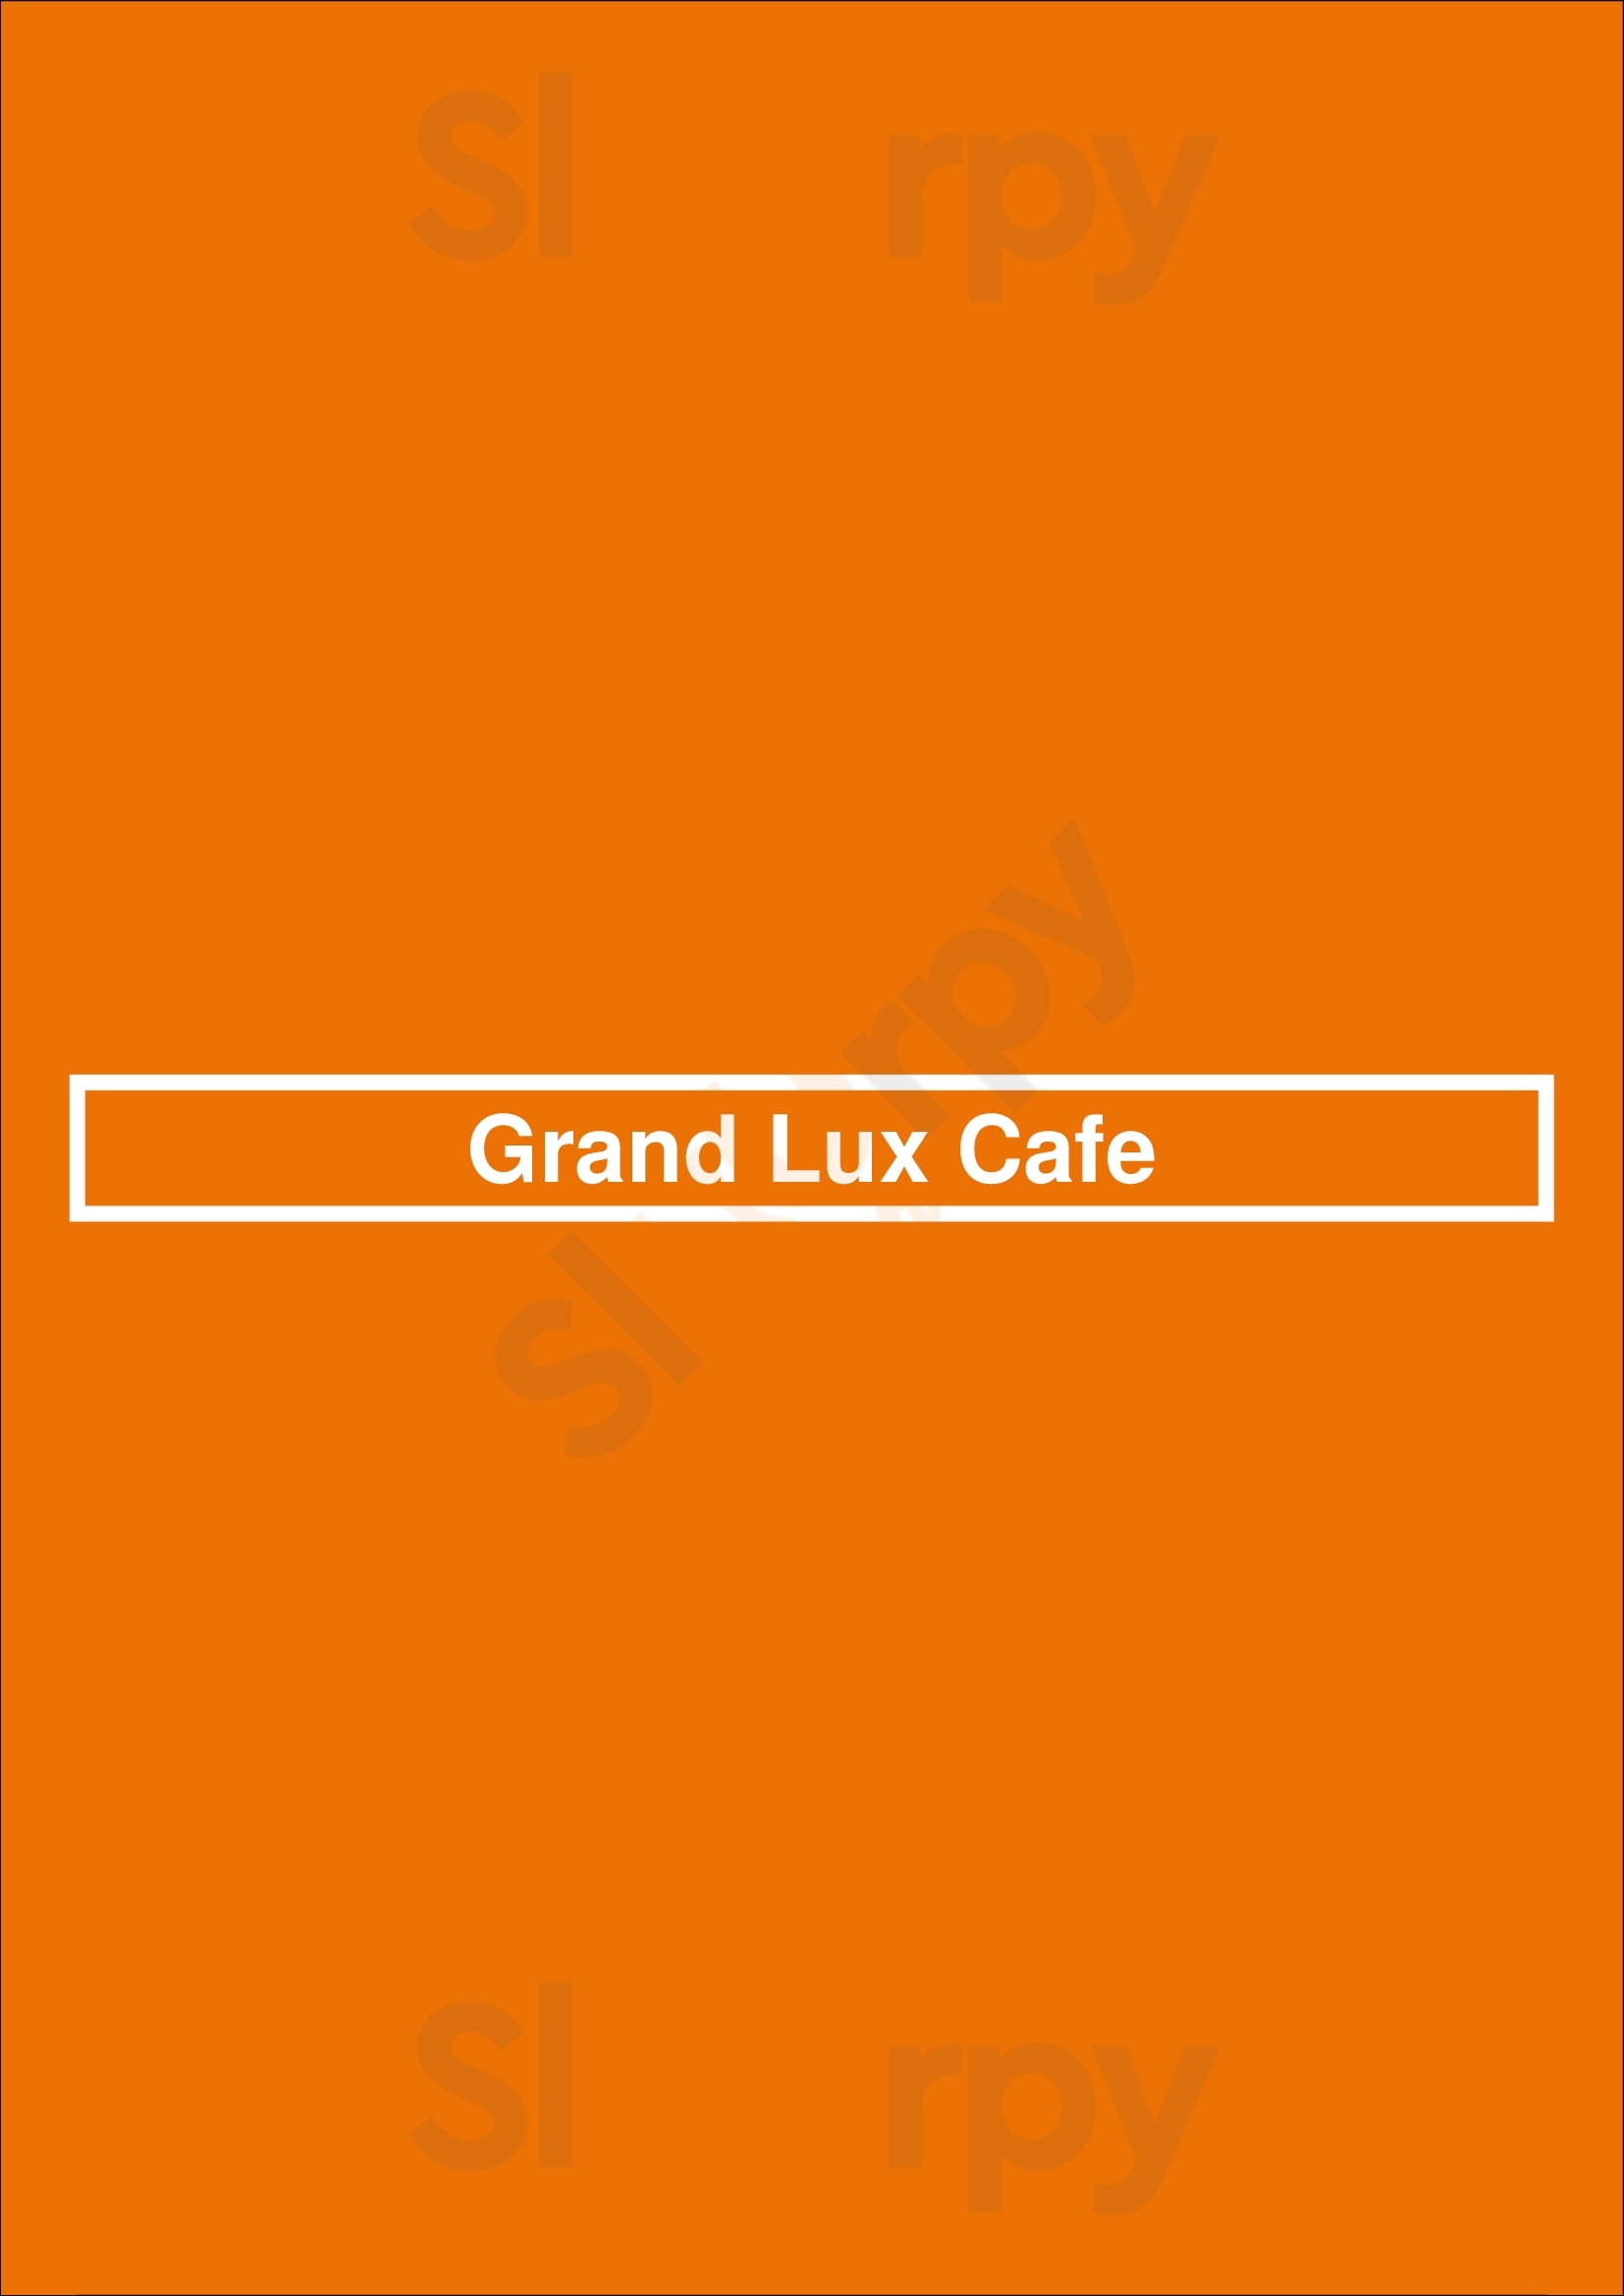 Grand Lux Cafe Dallas Menu - 1